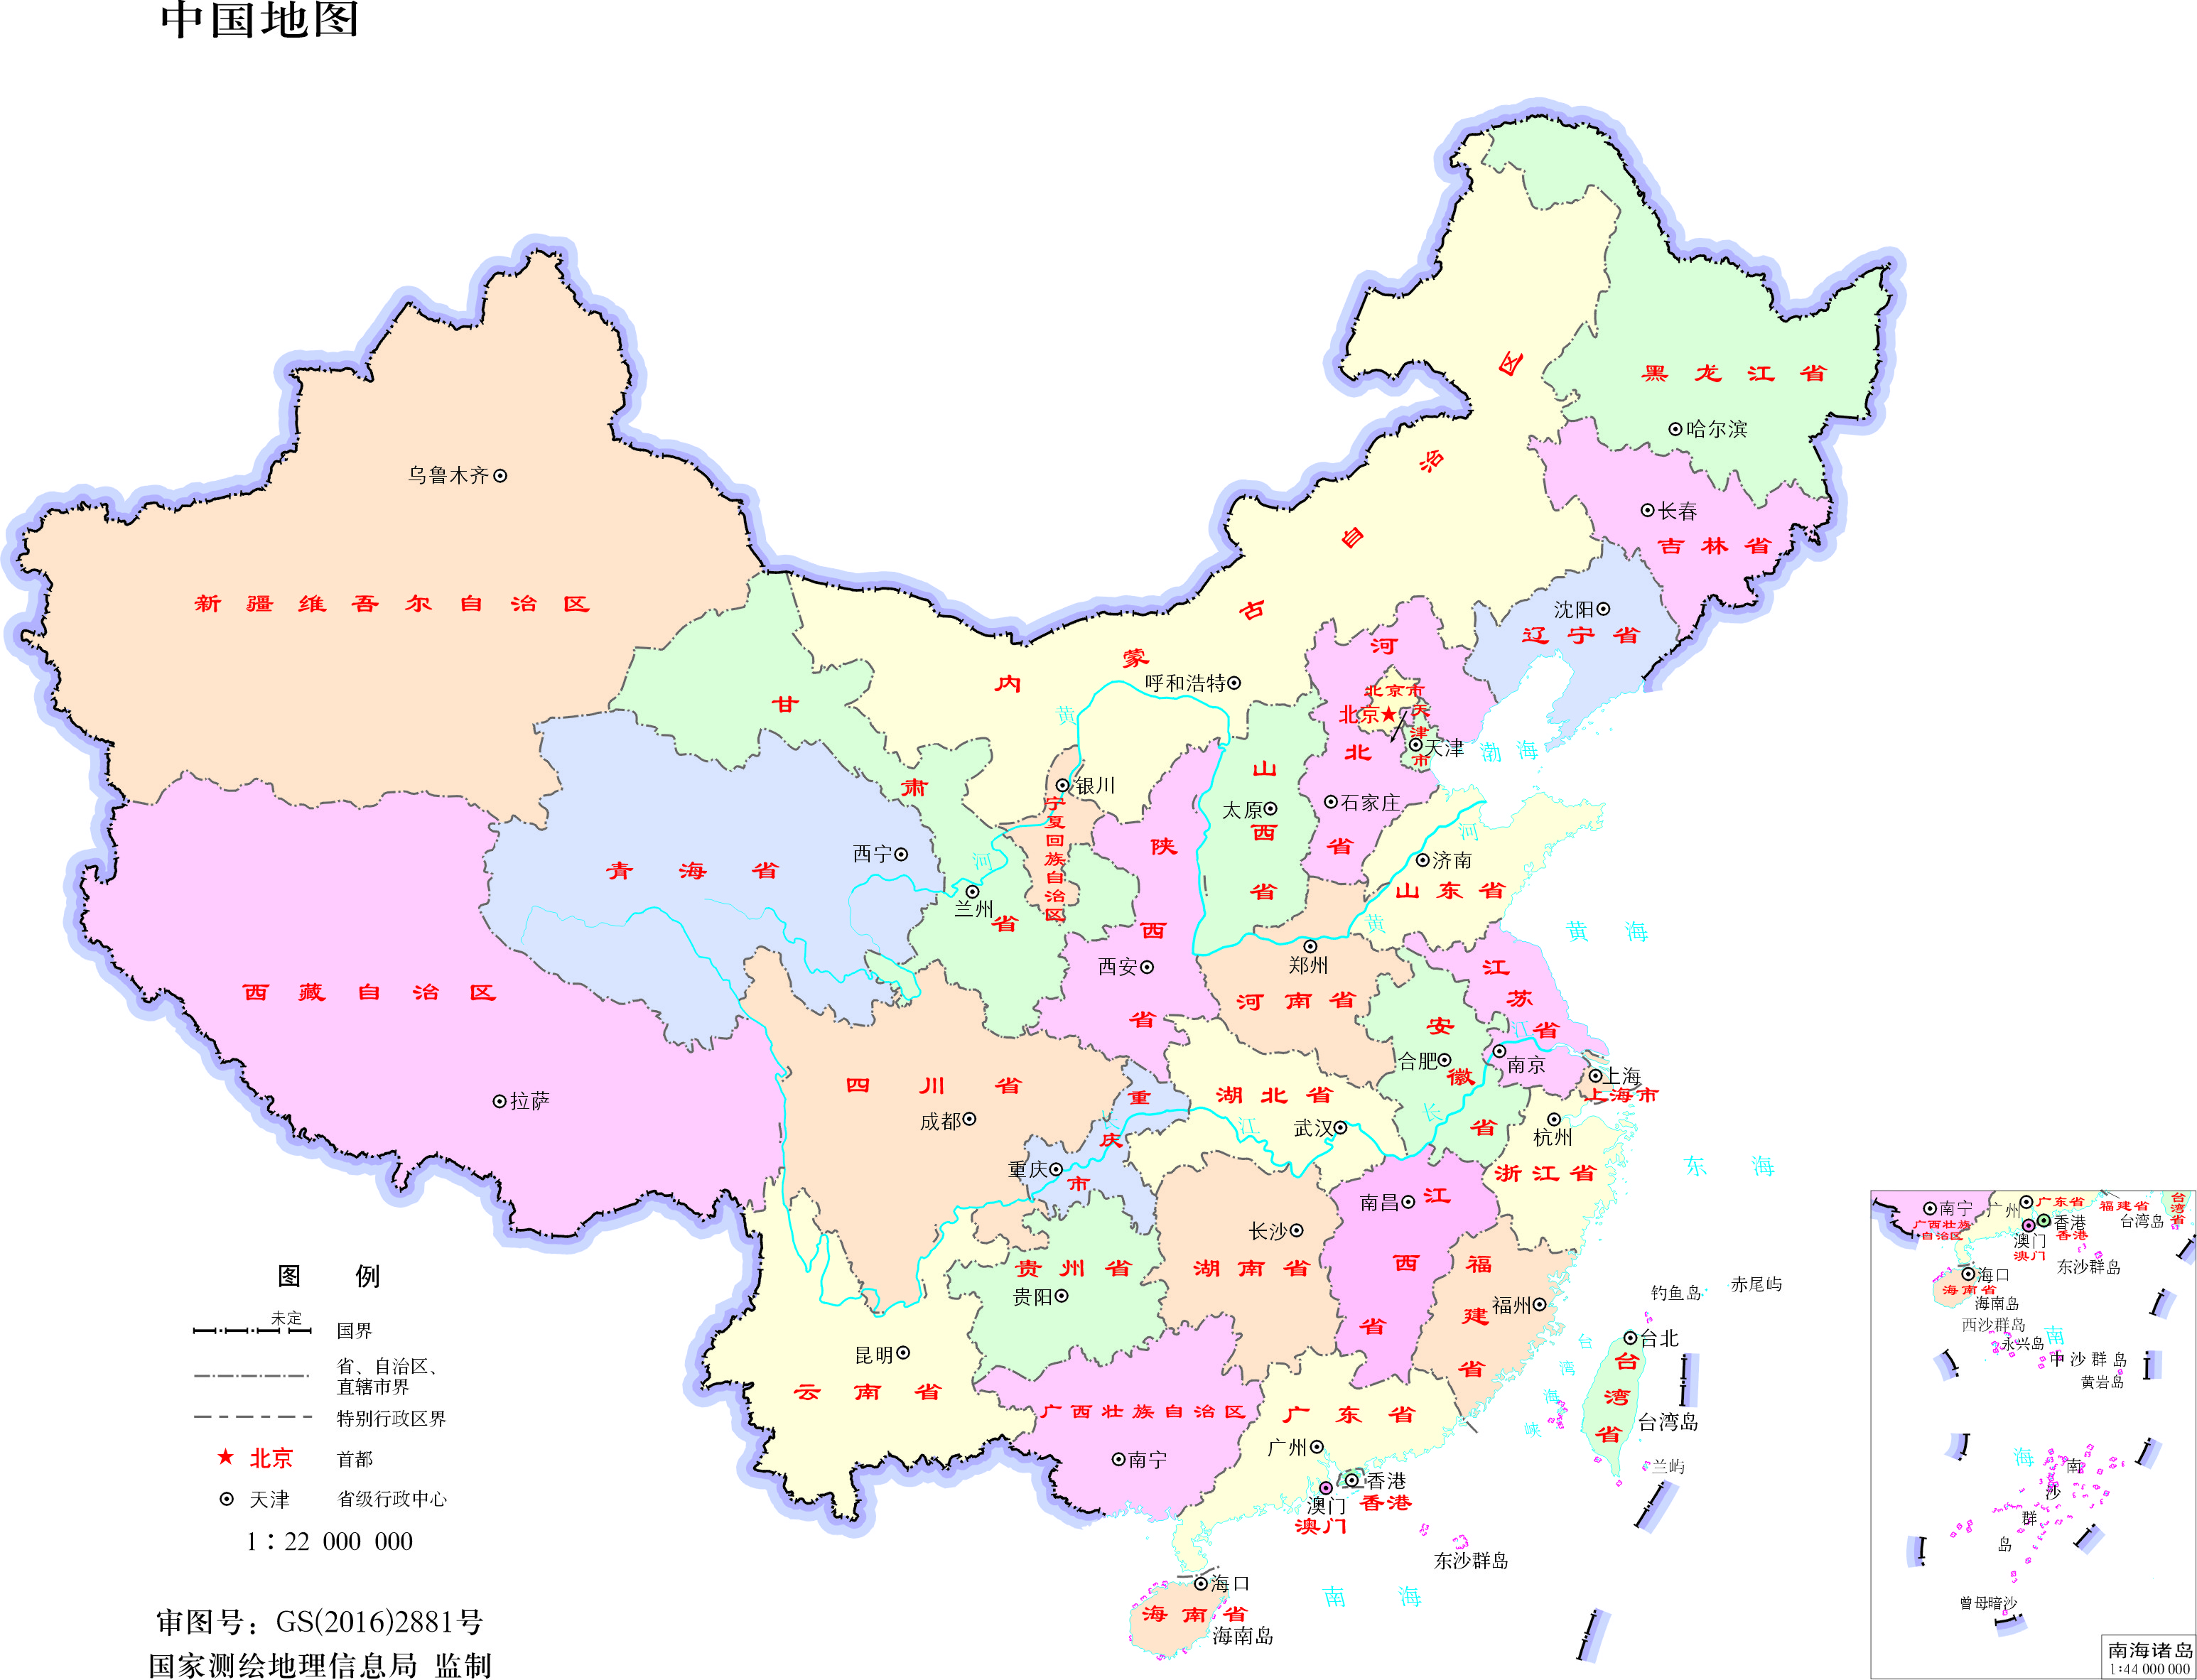 中国地图全图高清版 - 中国地图高清版大图 - 中国各省市地图全图